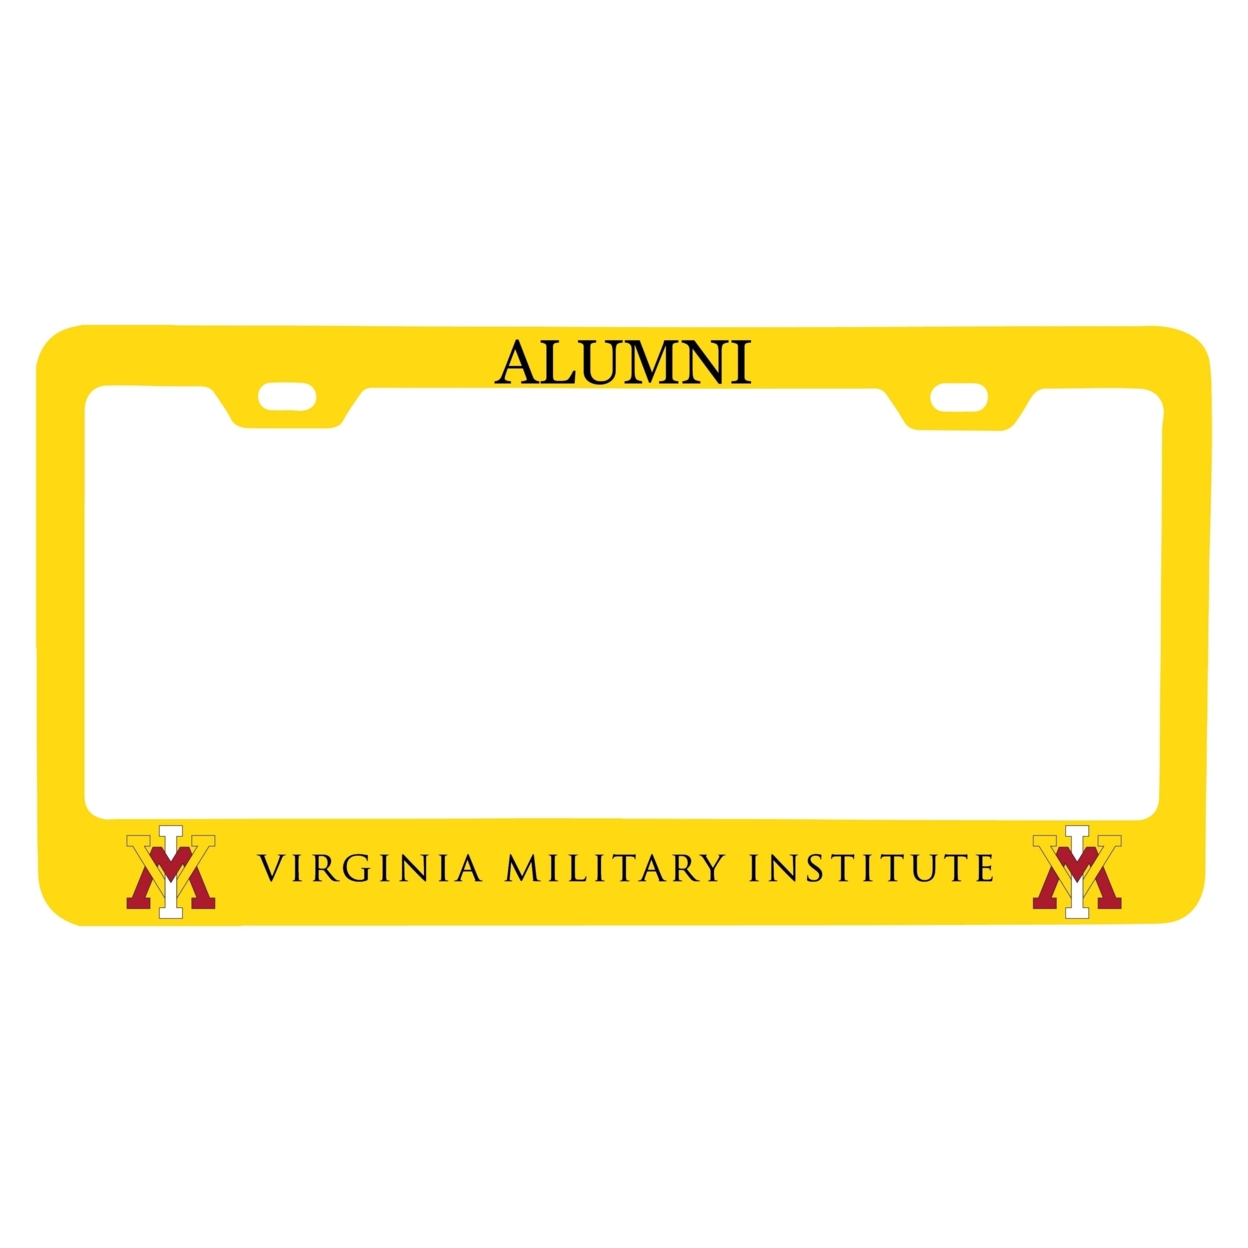 VMI Keydets Alumni License Plate Frame